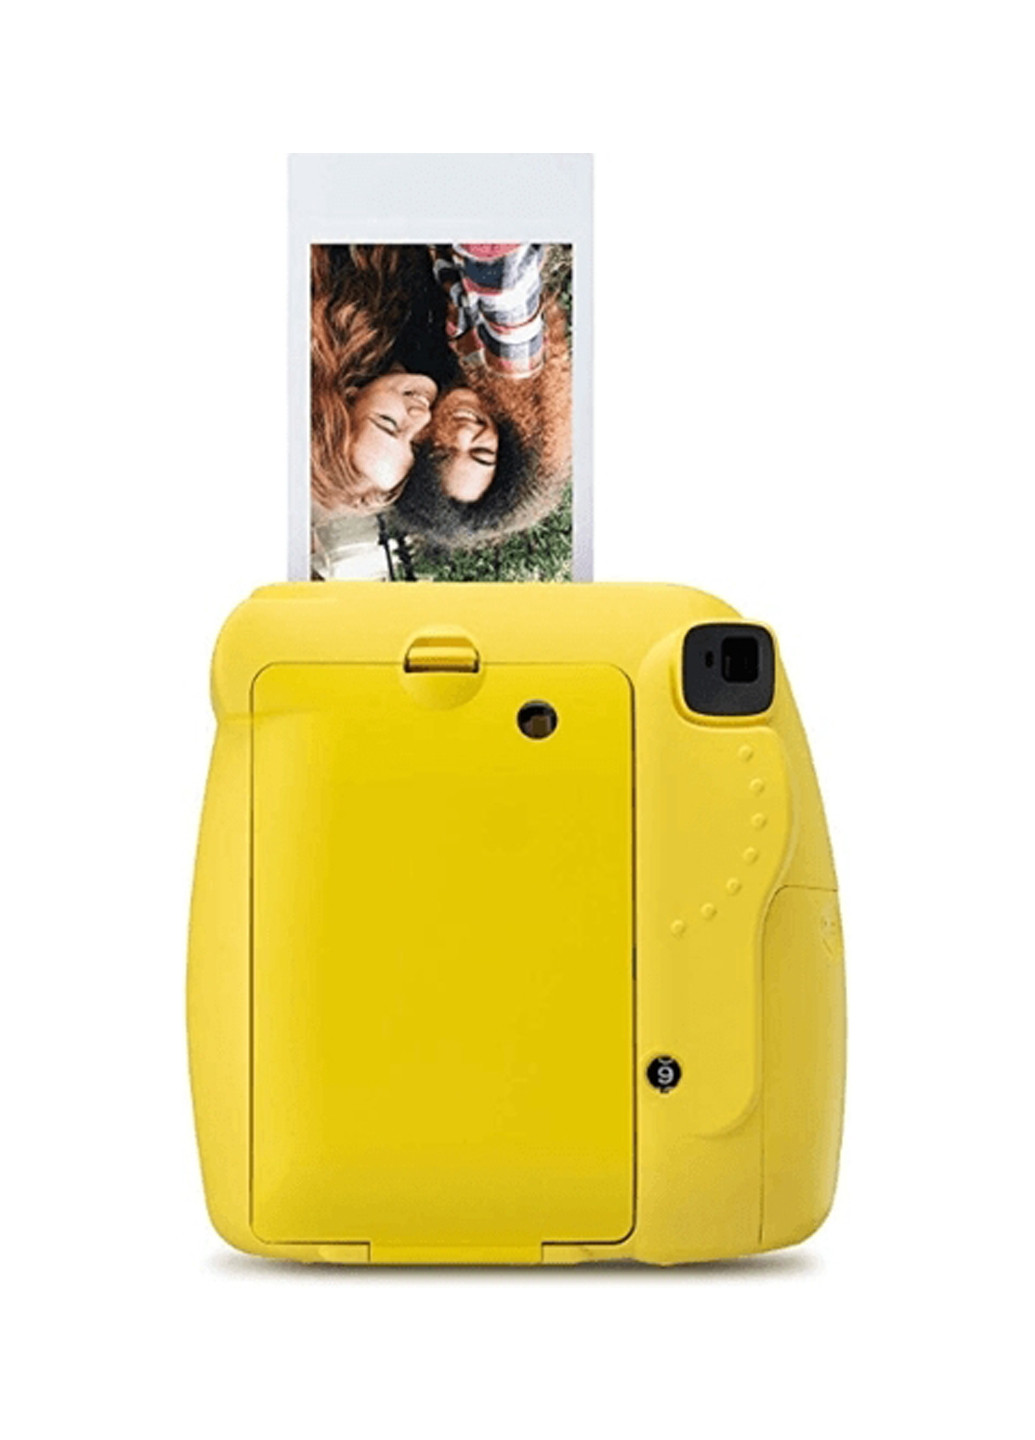 Фотокамера моментальной печати INSTAX Mini 9 Yellow Fujifilm моментальной печати instax mini 9 yellow (151241178)